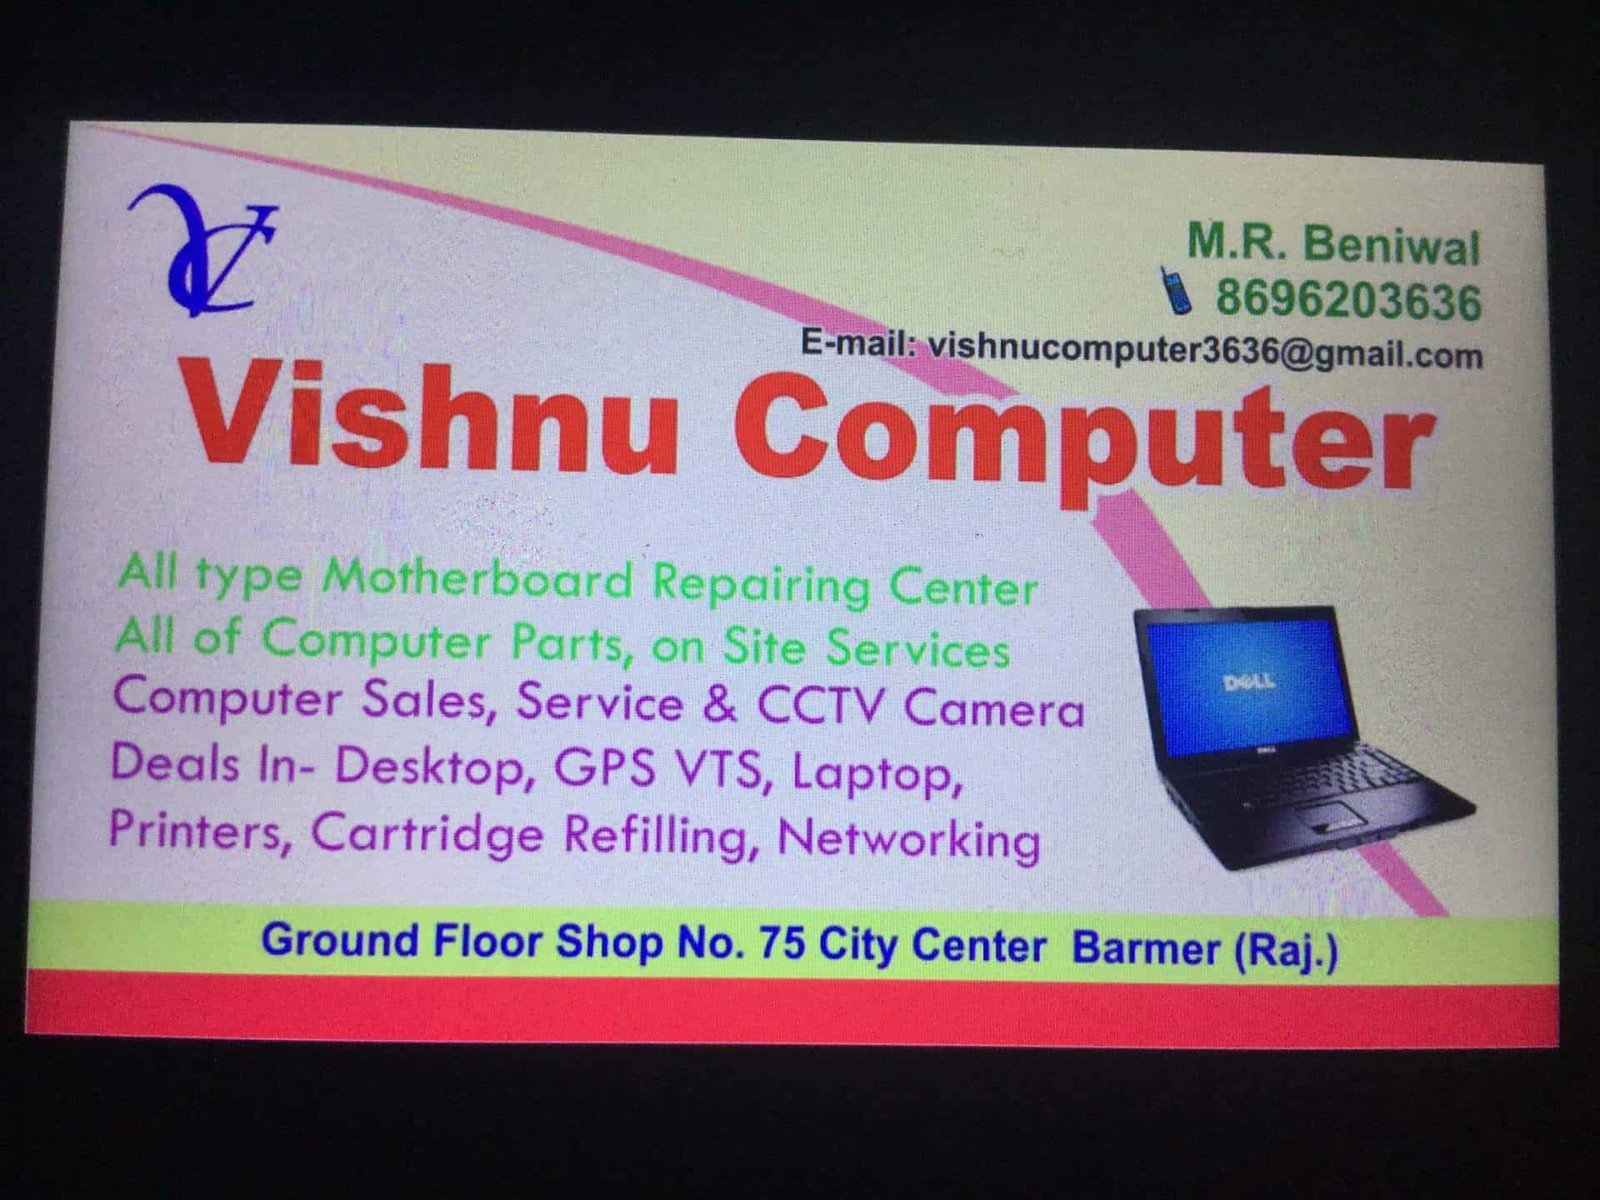 Vishnu Computer